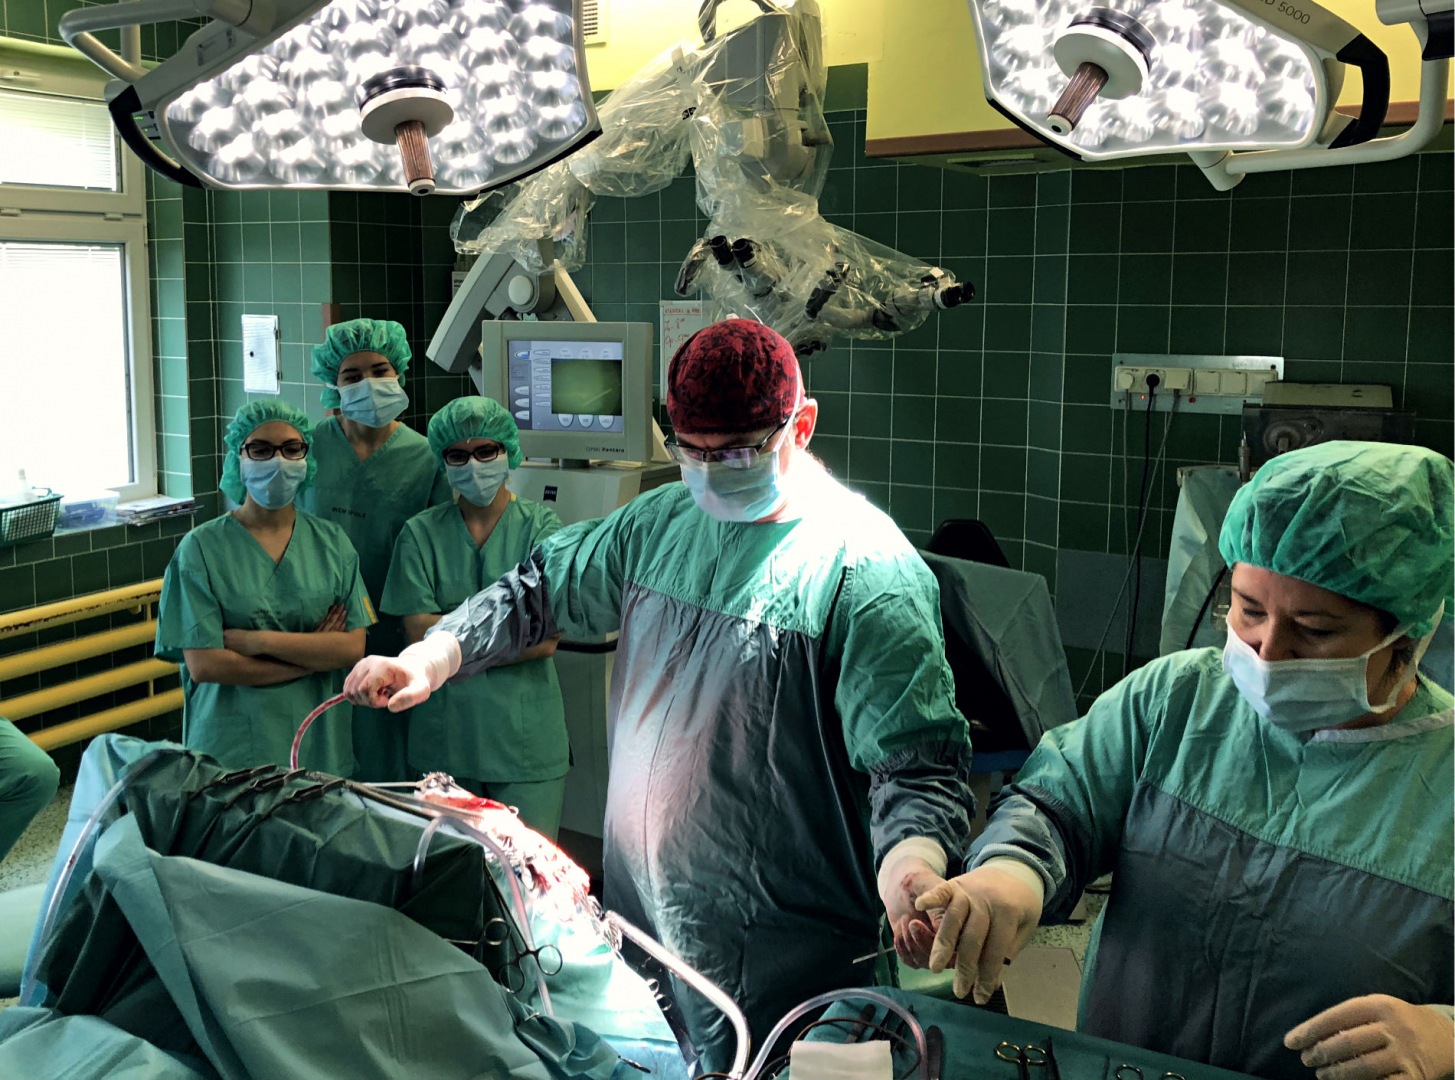 Trwa operacja neurochirurgiczna w Uniwersyteckim Szpitalu Klinicznym w Opolu. Studenci pierwszego roku kierunku lekarskiego UO mogą obserwować ją na żywo. Praktyka, praktyka i jeszcze raz praktyka!